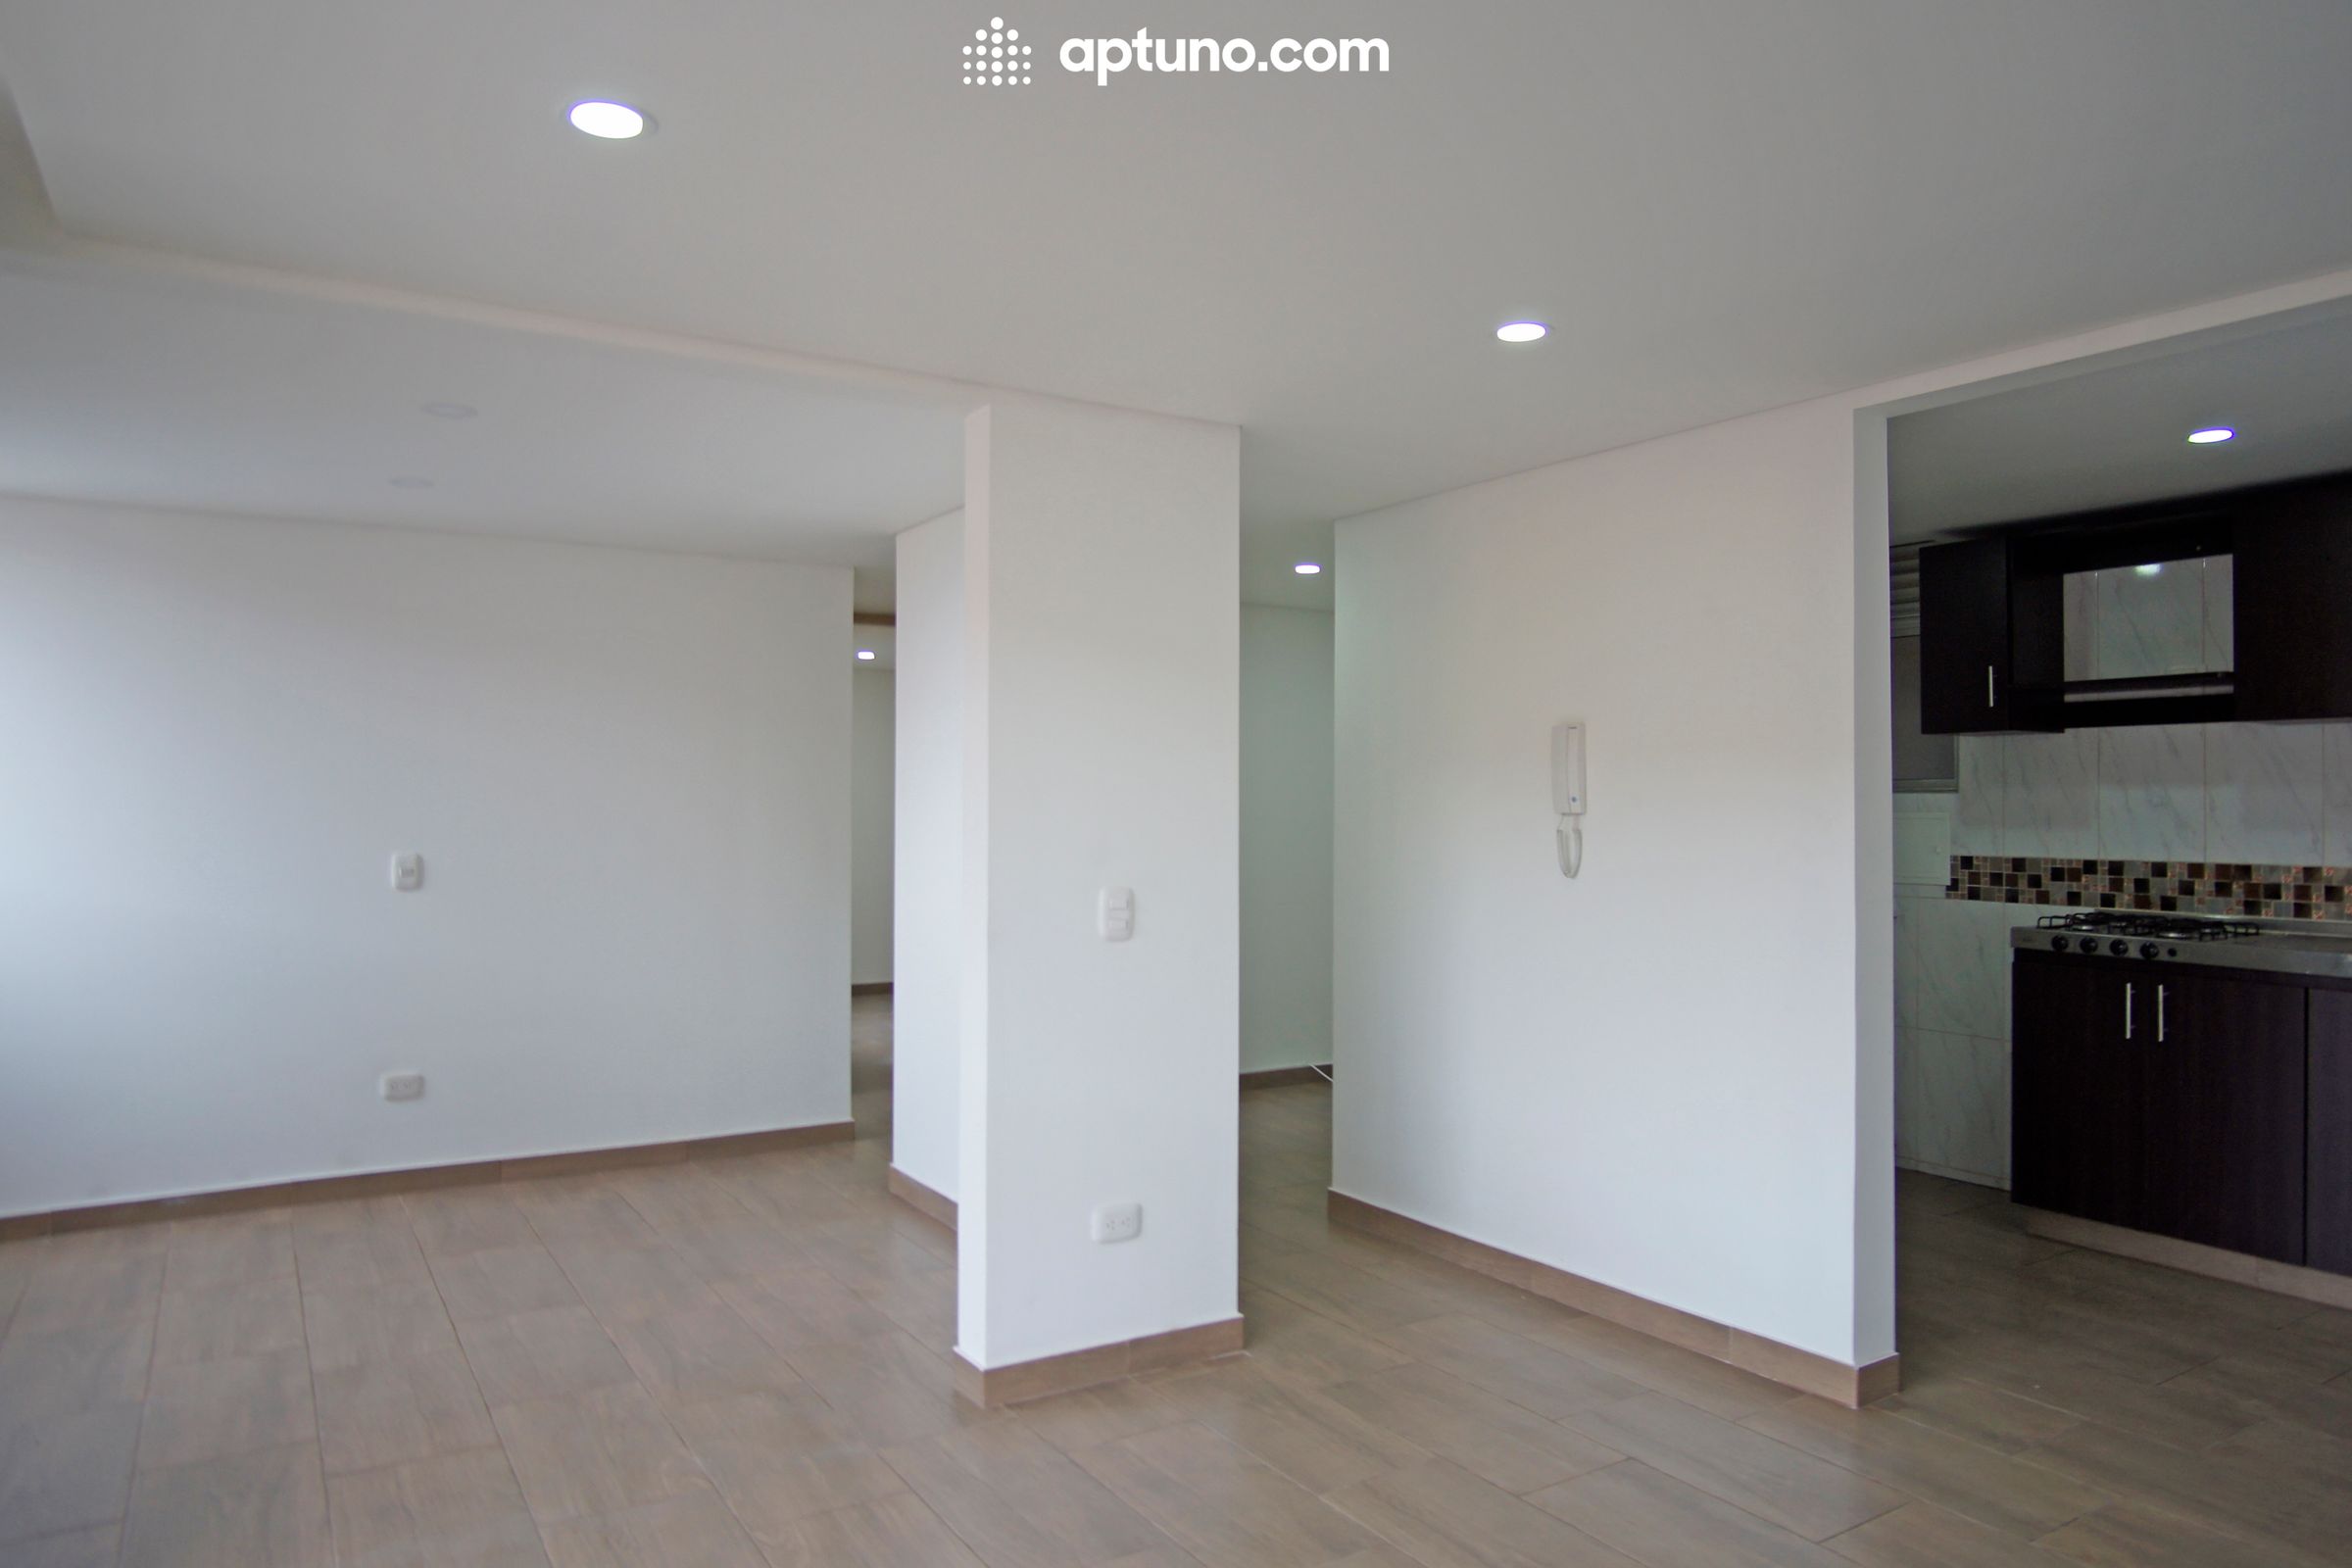 Apartamento en arriendo Madrid 54 m² - $ 810.000,00